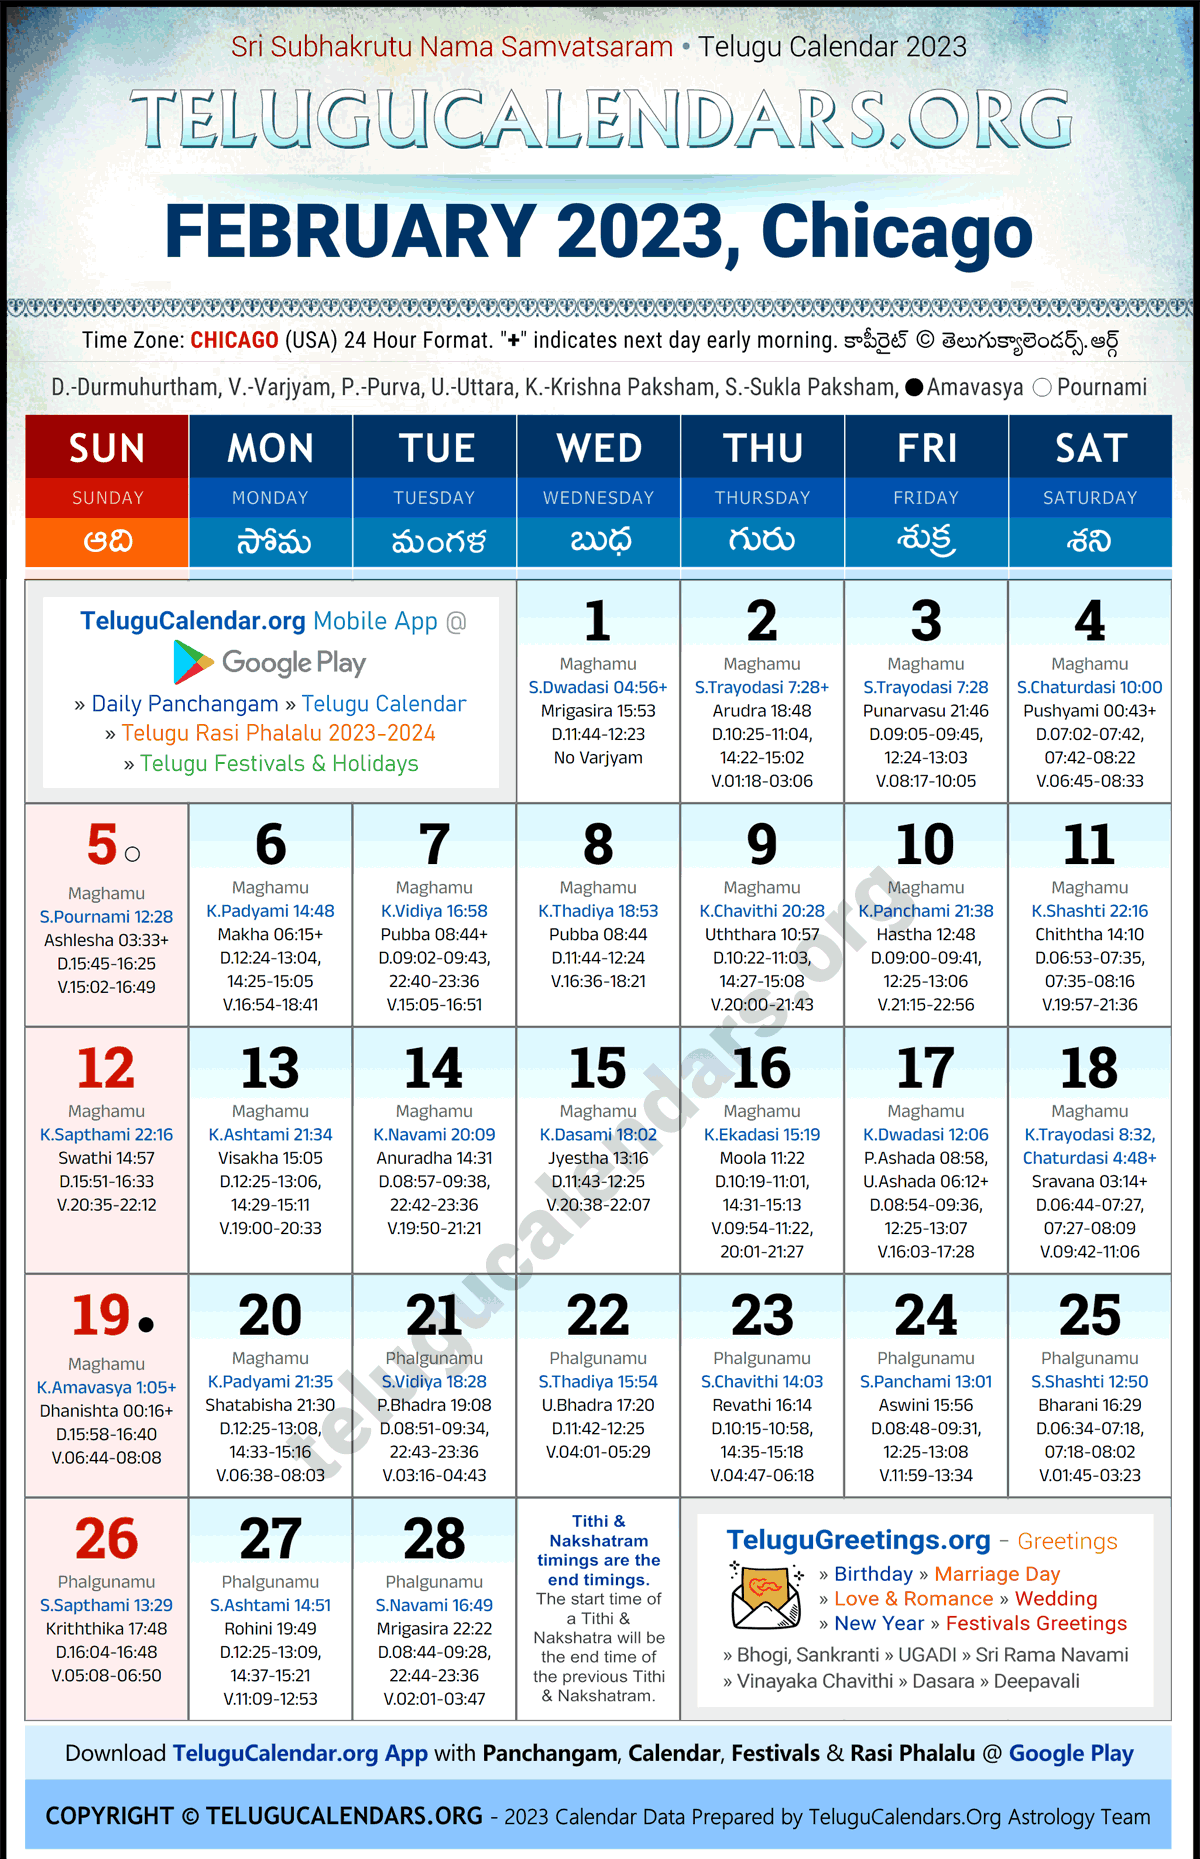 Telugu Calendar 2023 February Festivals for Chicago